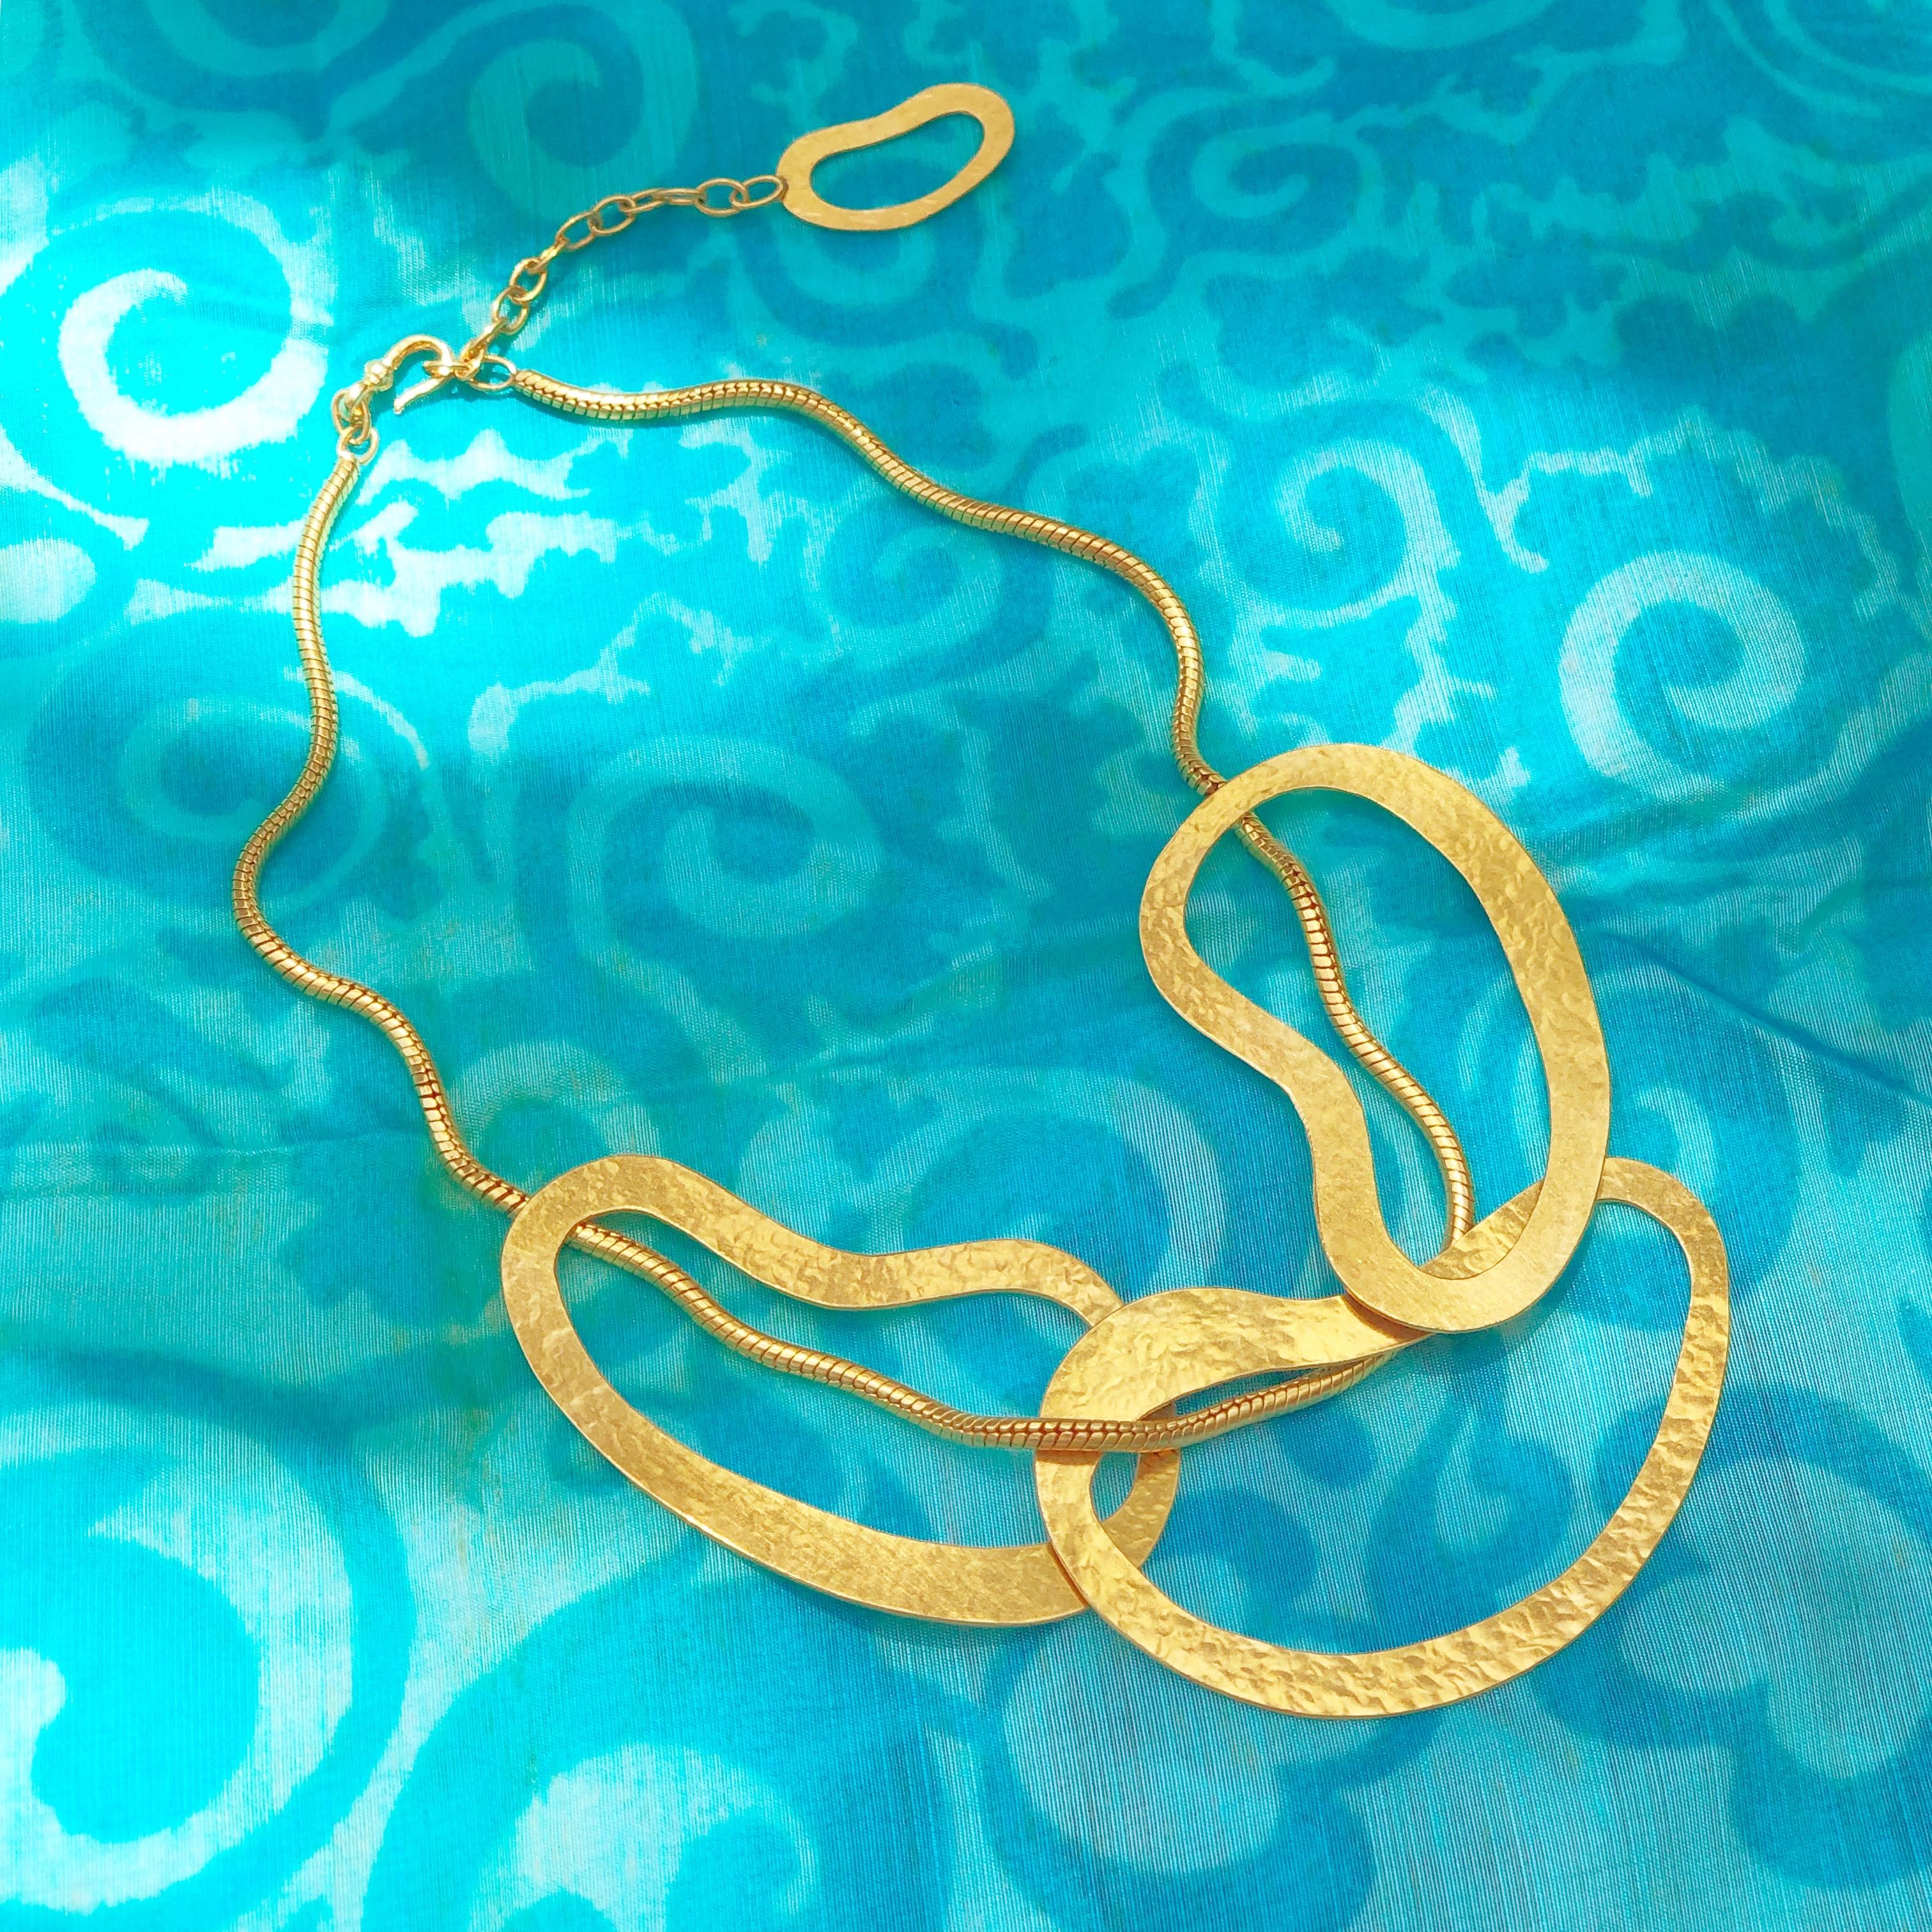 Exquisite vergoldete, abstrakte, zeitgenössische Statement-Halskette von Designer Herve van der Straeten. Gehämmerte, vergoldete Messingringe verflechten sich mit einer eleganten Schlangenkette zu einem einzigartigen Kunstwerk der Architektur!  Eine